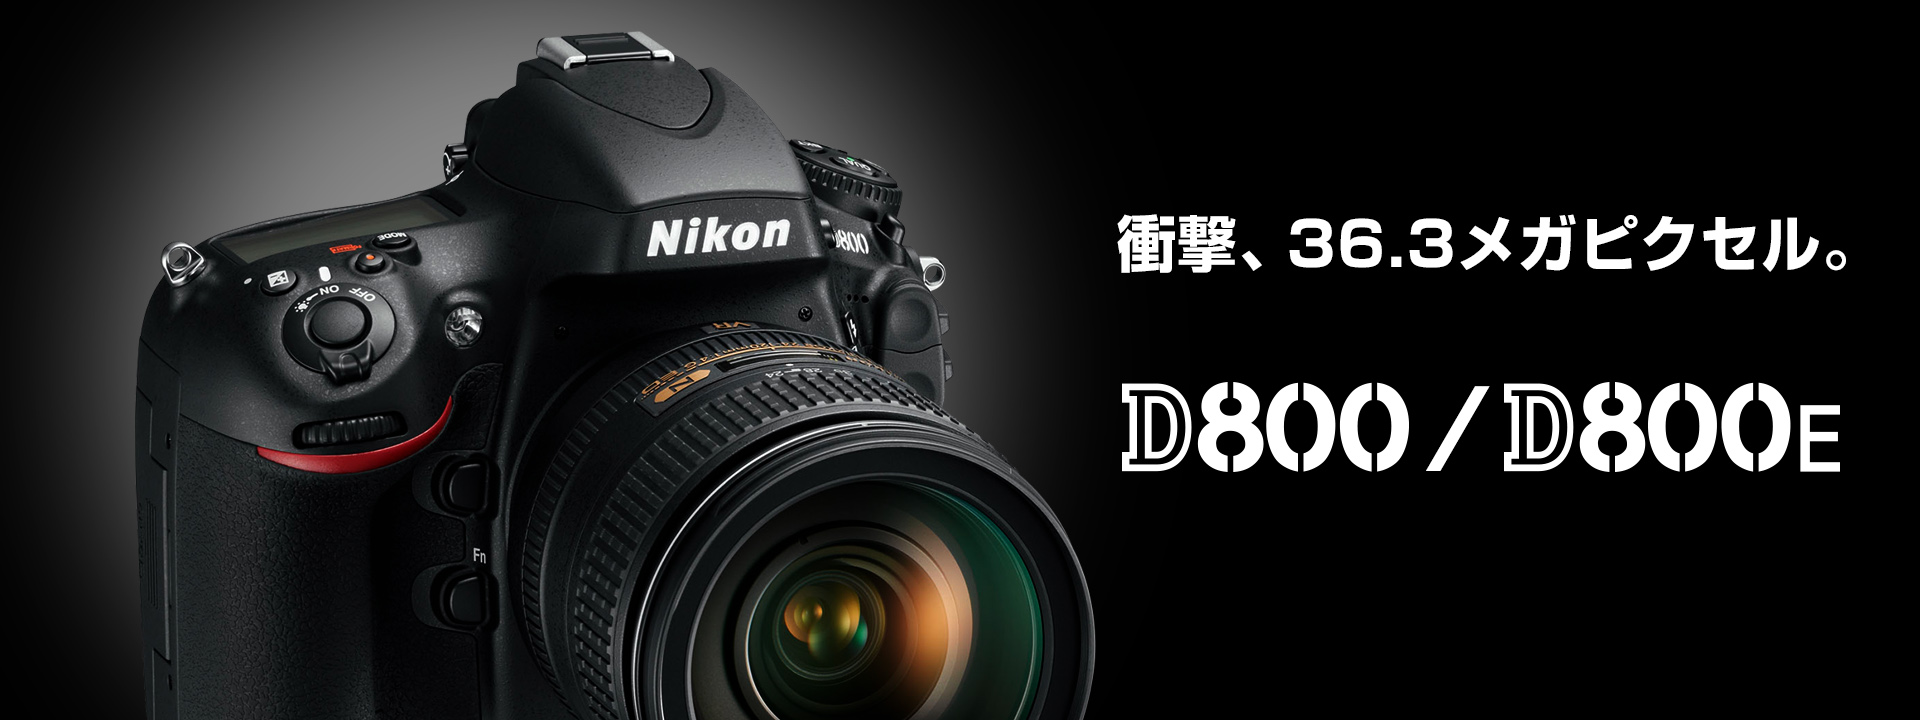 #1434 【並品】Nikon ニコン デジタル一眼レフカメラ D800 ボディ